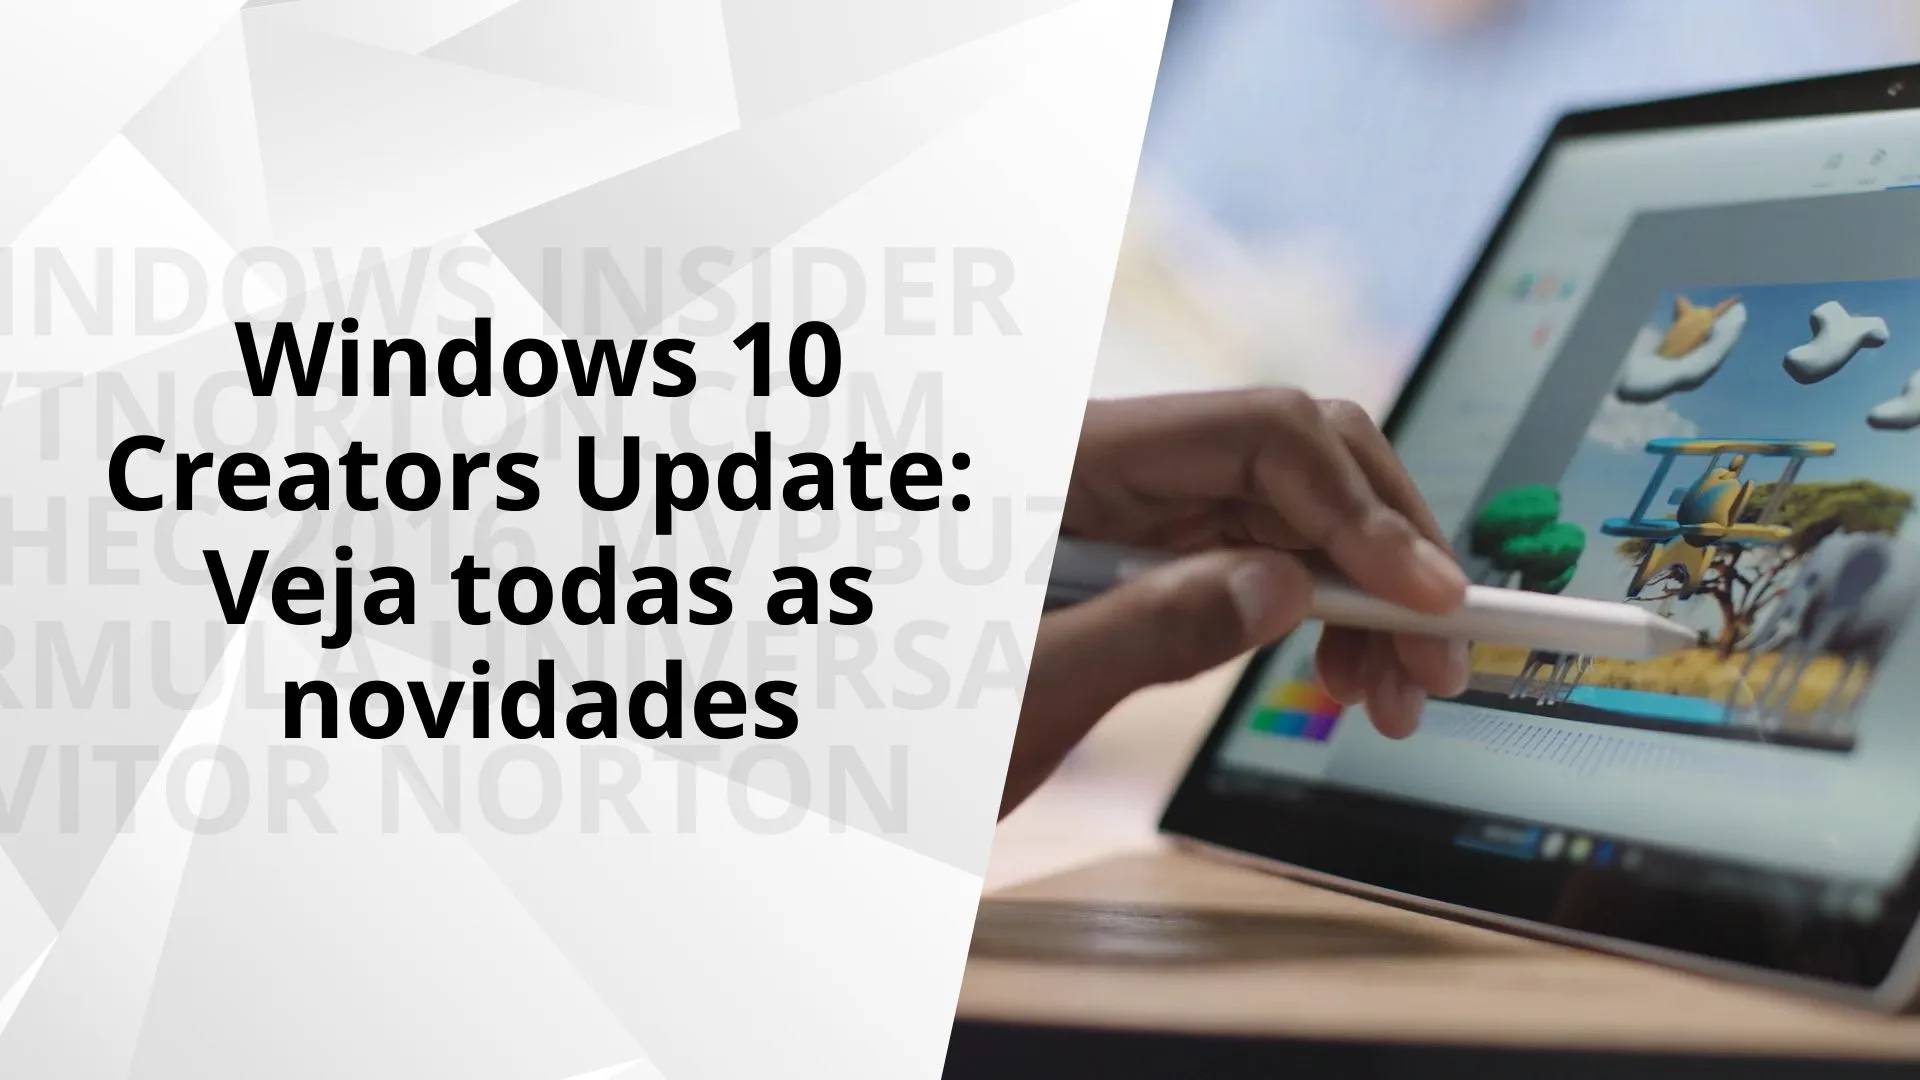 As novidades do Windows 10 Creators Update